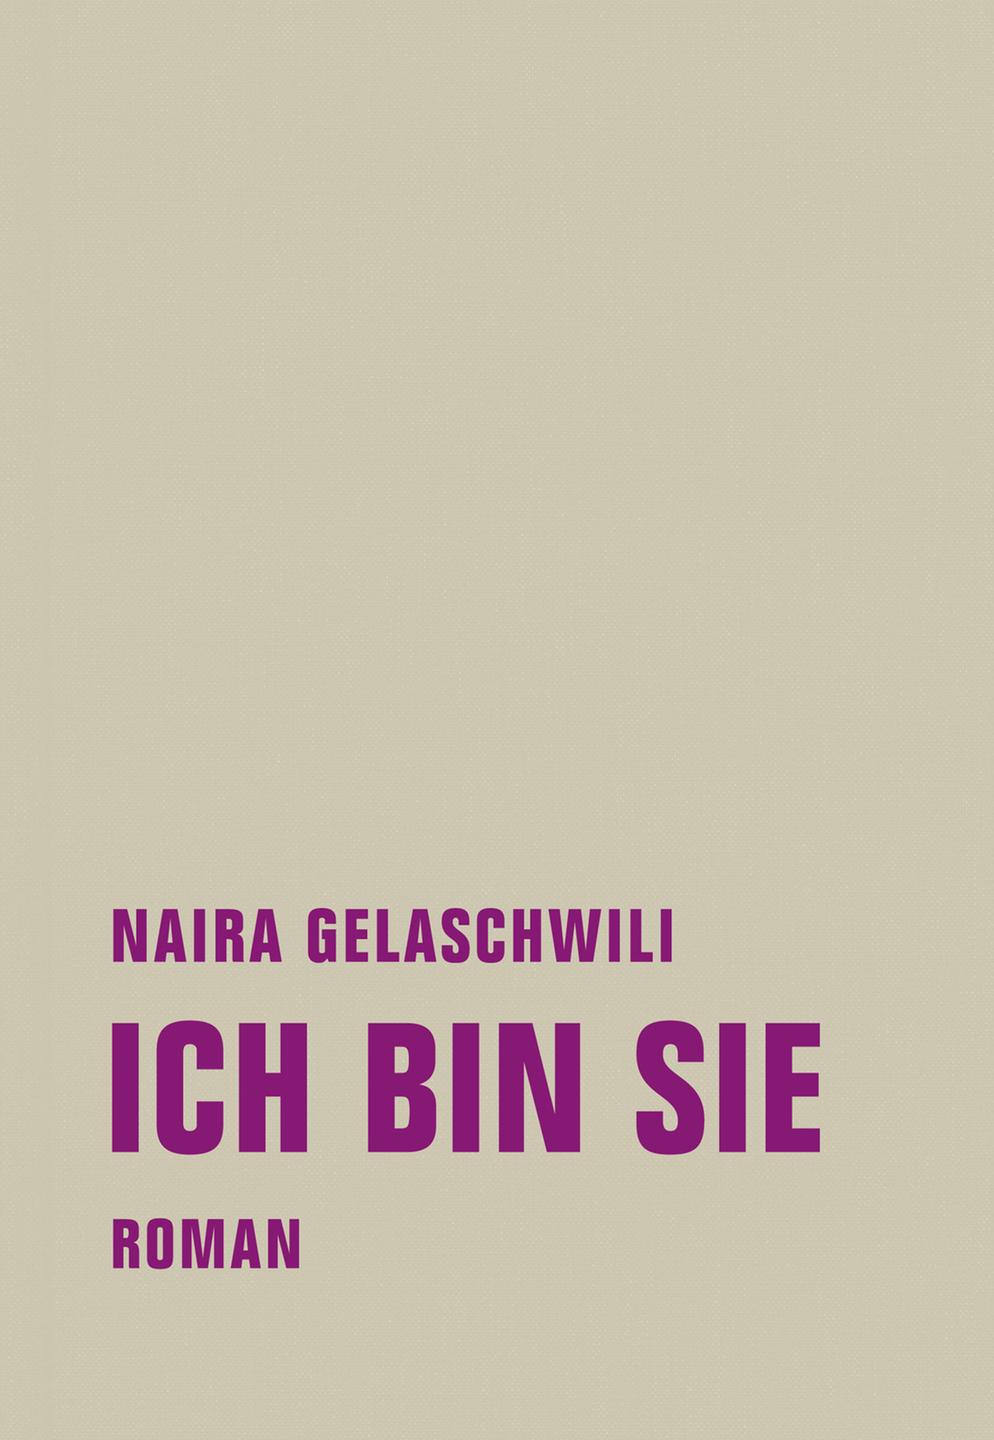 Buchcover Naira Gelaschwili: "Ich bin sie"